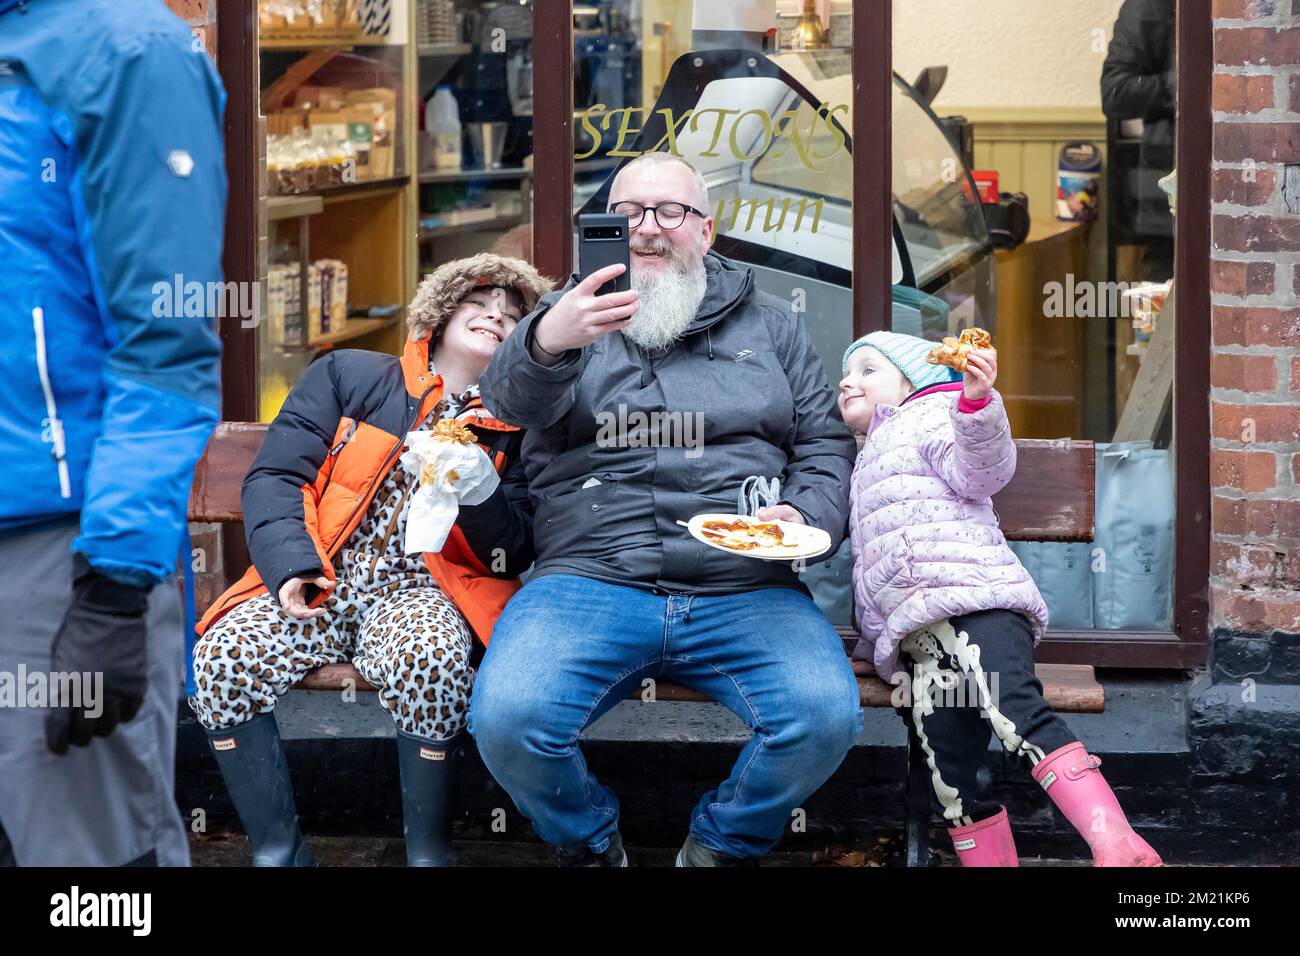 L'homme barbu rit sur un selfie pris avec ses deux filles Banque D'Images